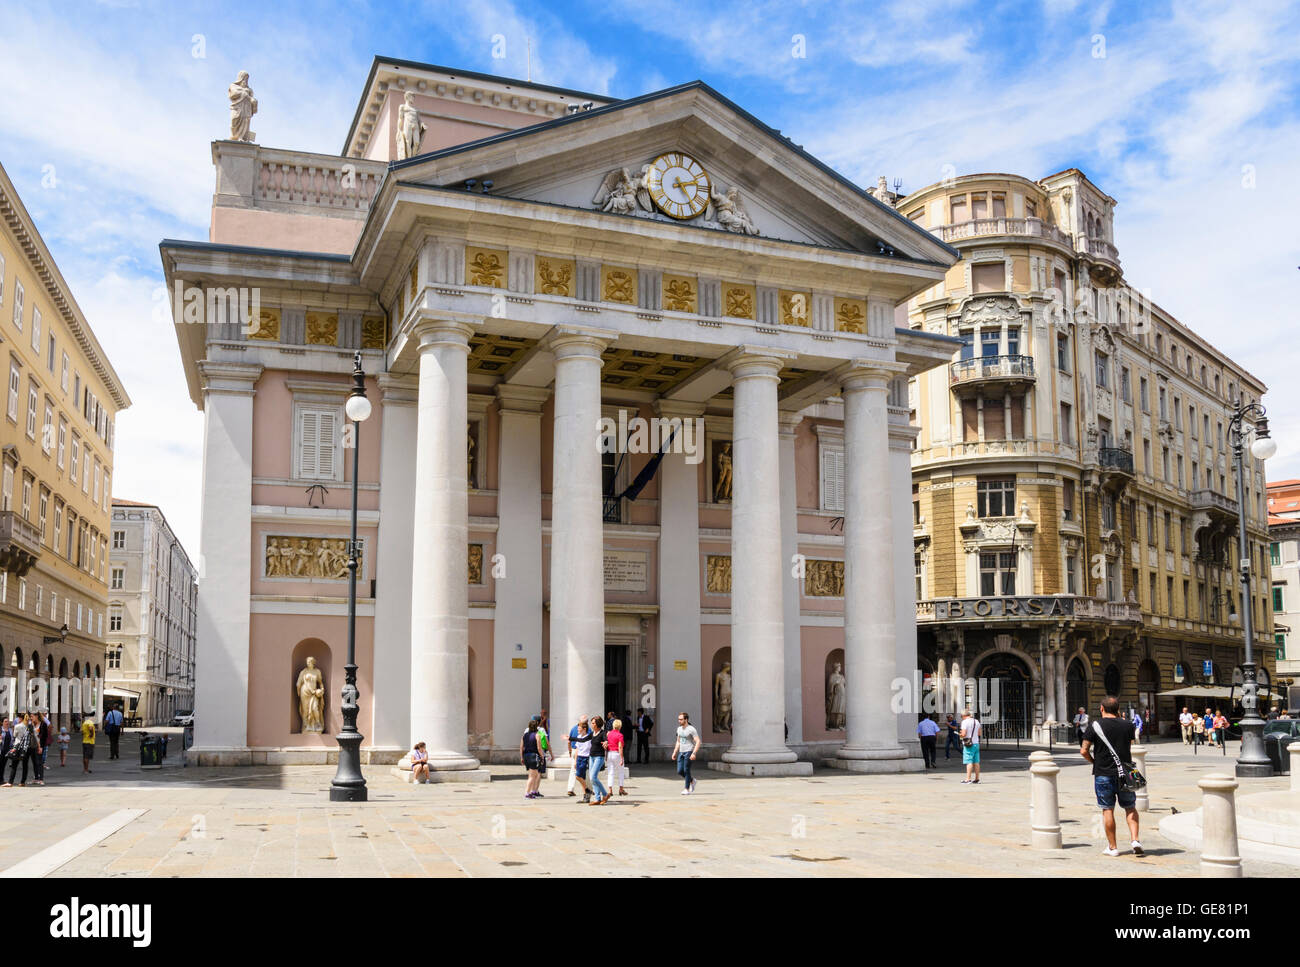 The Palazzo della Borsa Vecchia, Piazza della Borsa, Trieste, Italy Stock  Photo - Alamy